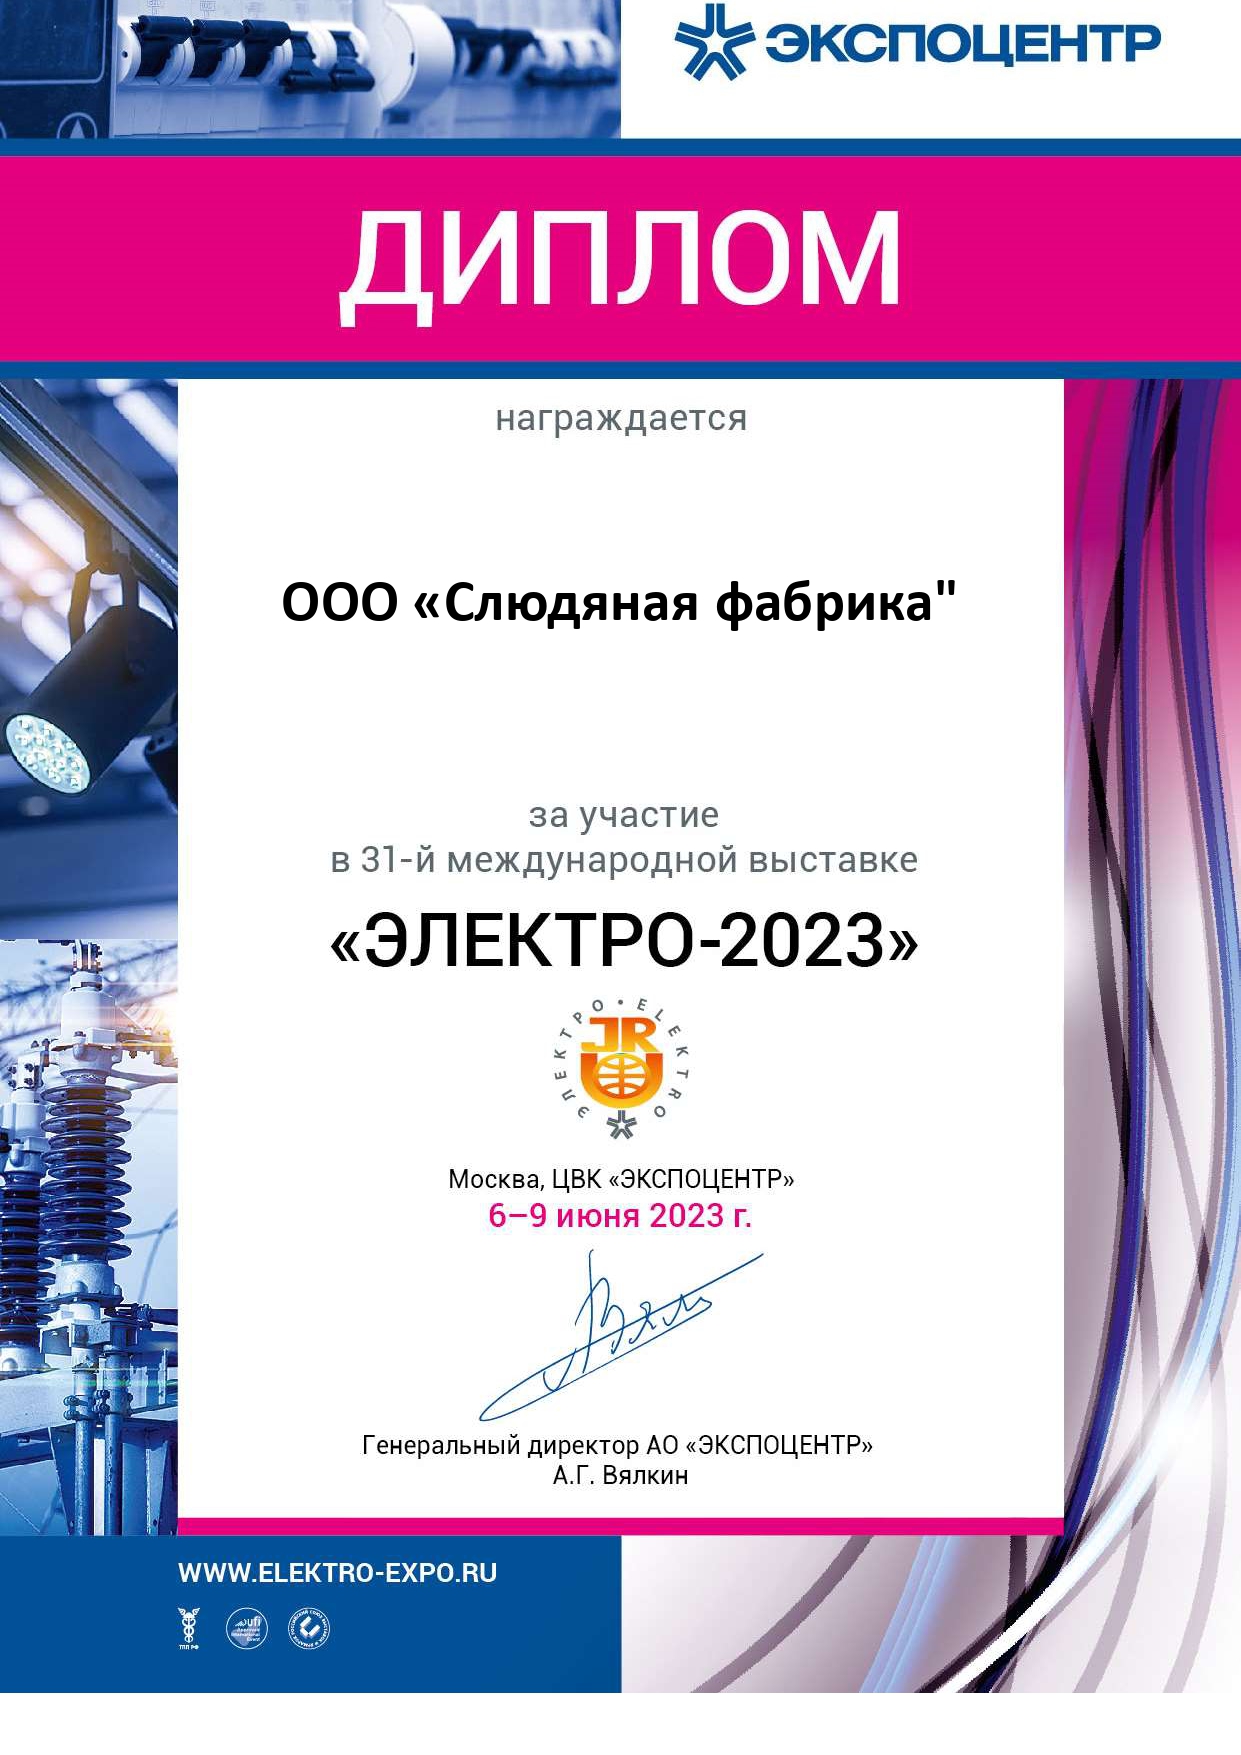 Участие в международной выставке ЭЛЕКТРО - 2023